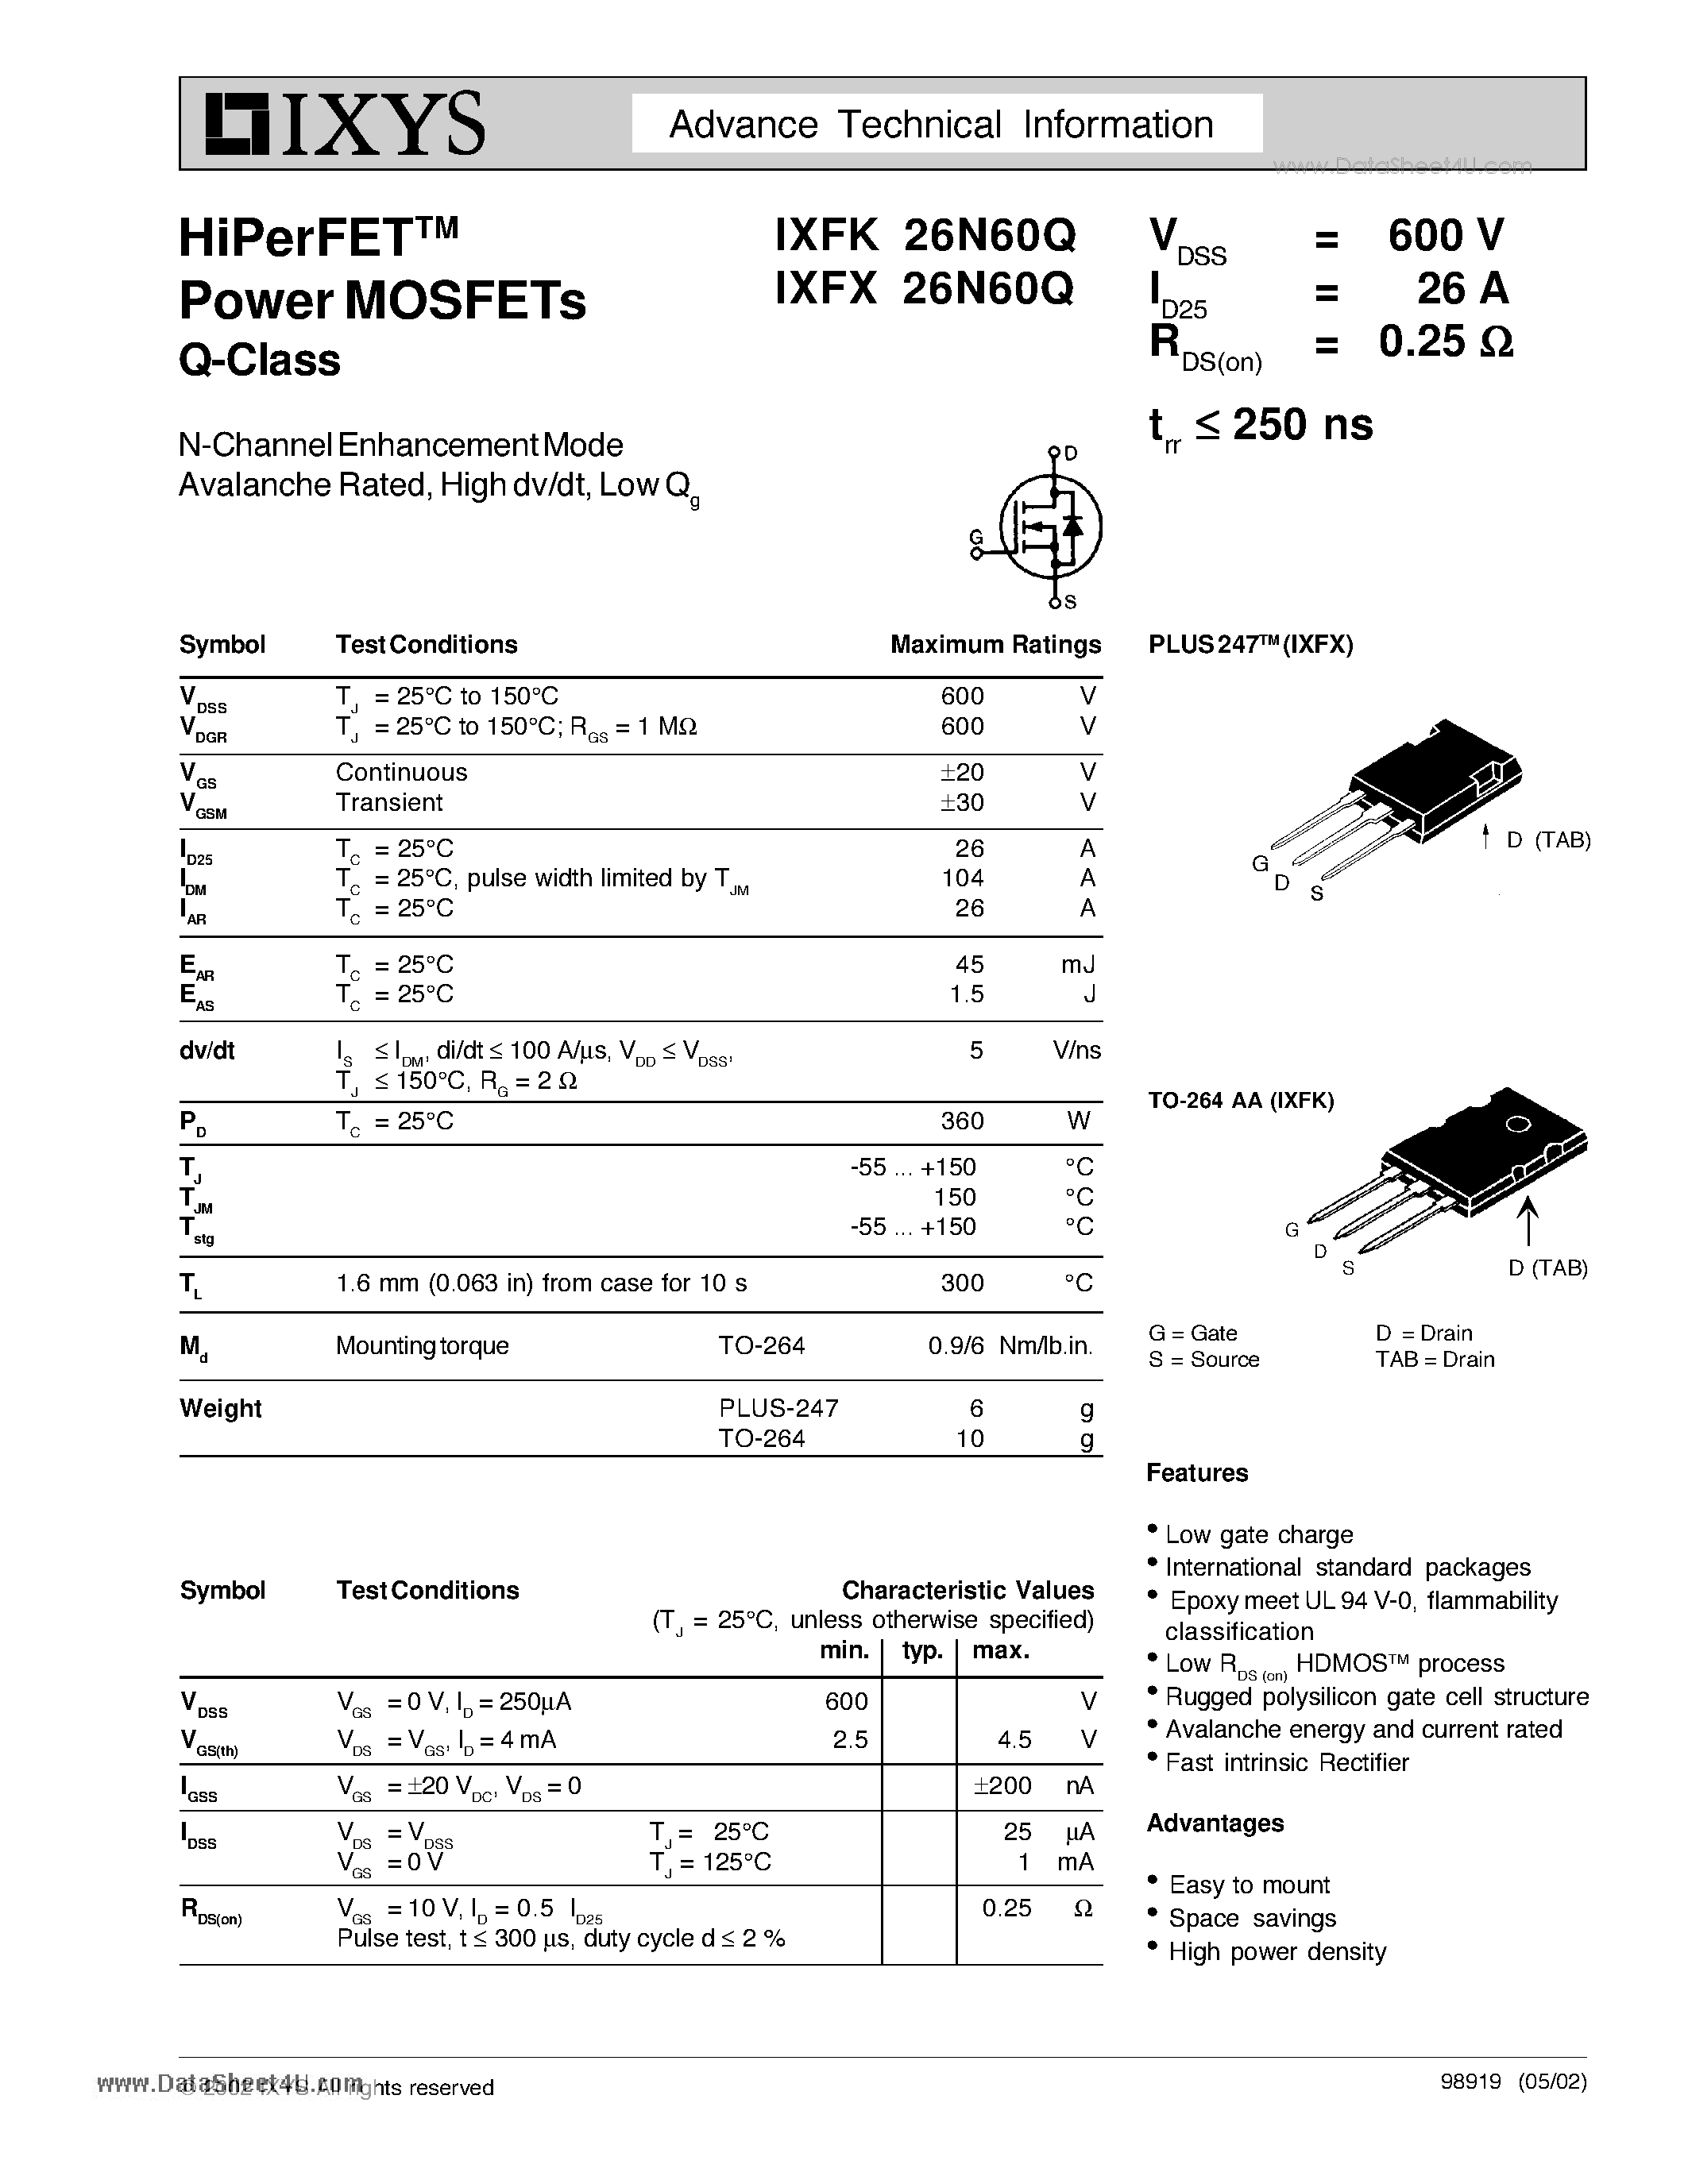 Даташит IXFK26N60Q - HiPerFET Power MOSFETs Q-Class страница 1